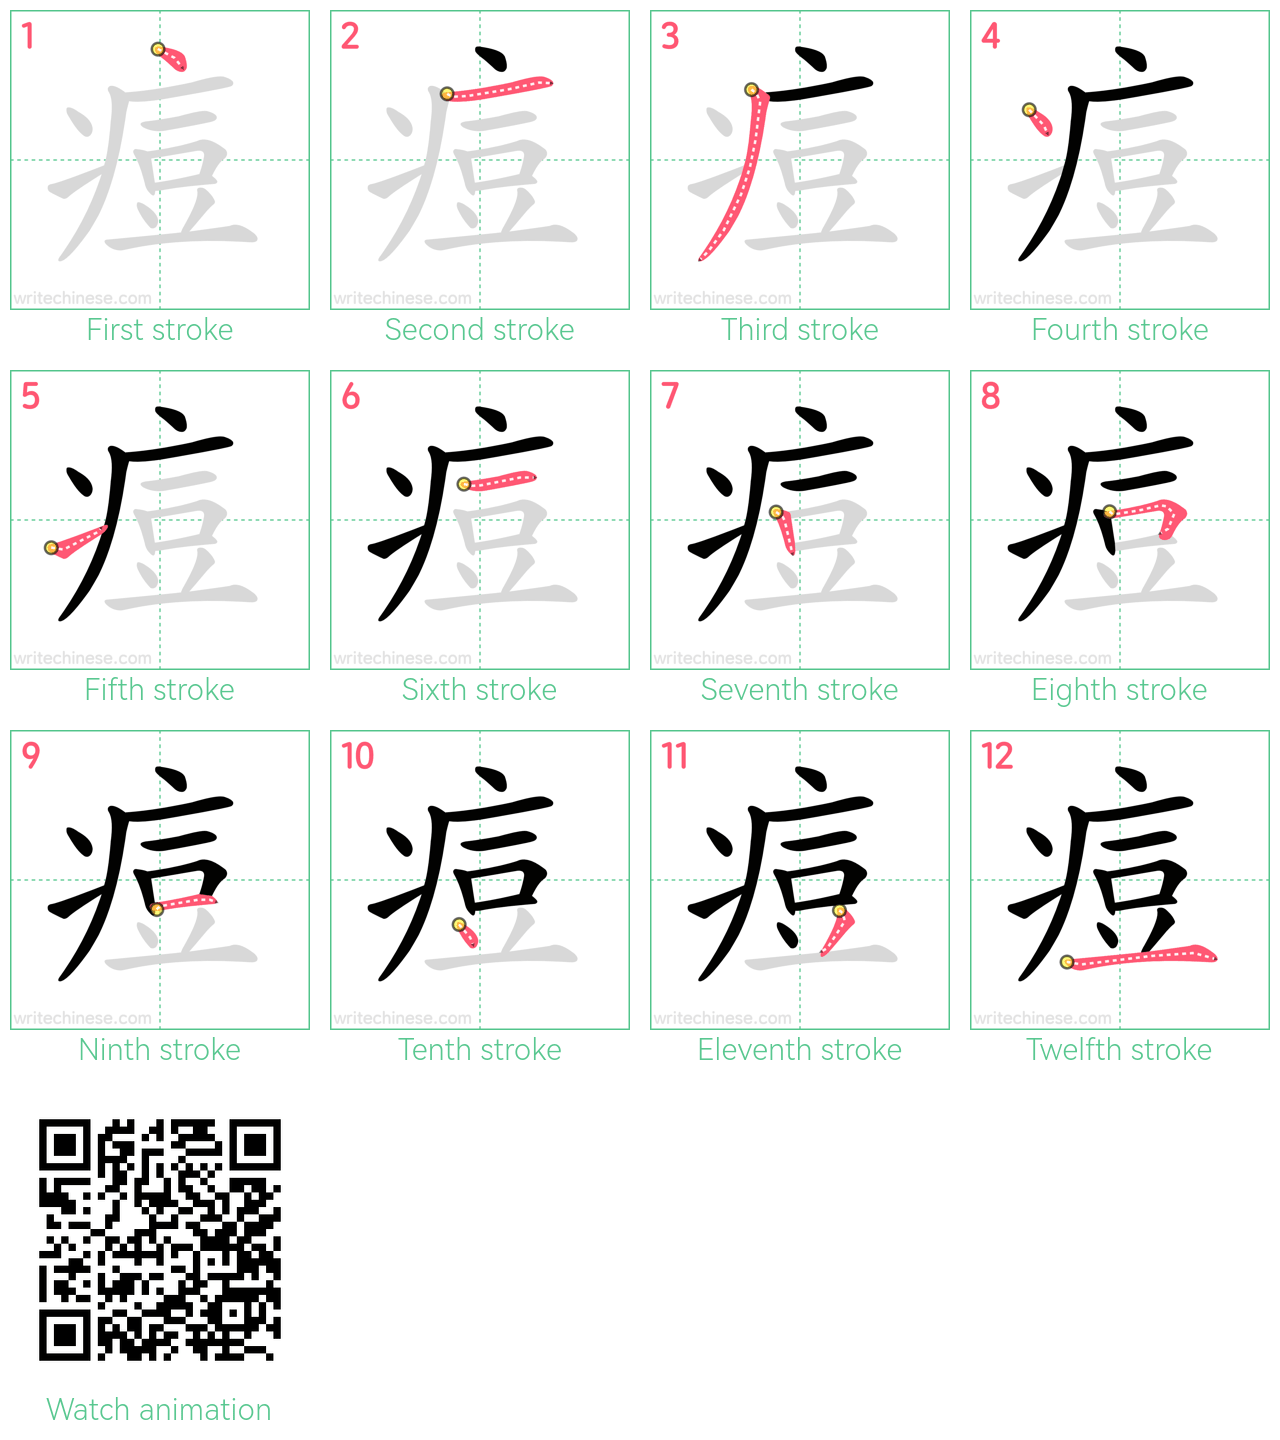 痘 step-by-step stroke order diagrams